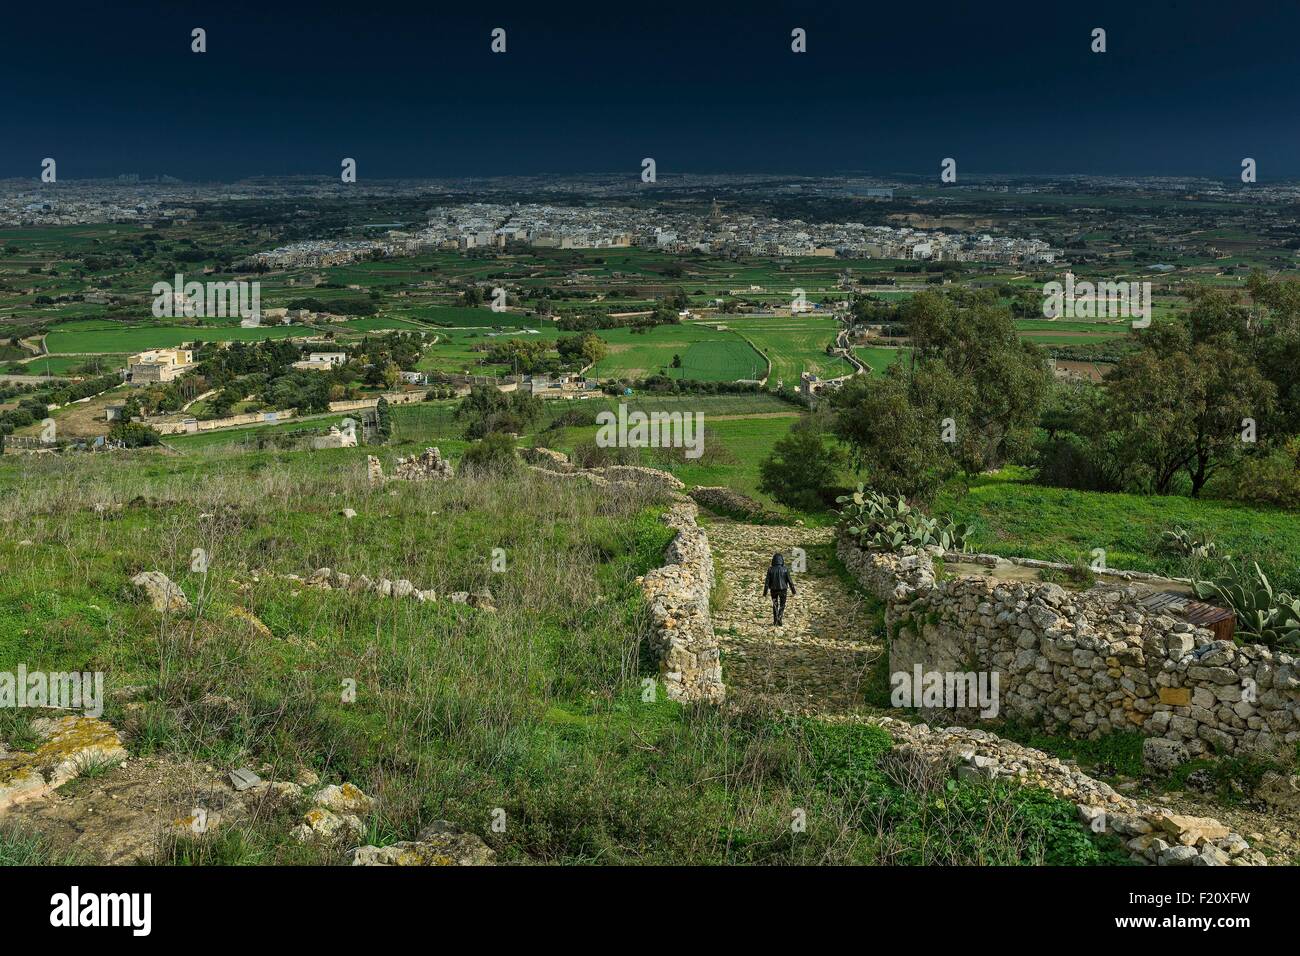 Malta, Siggiewi, Ansicht einer ländlichen Landschaft mit einer Stadt in der Ferne unter Gewitterhimmel Stockfoto